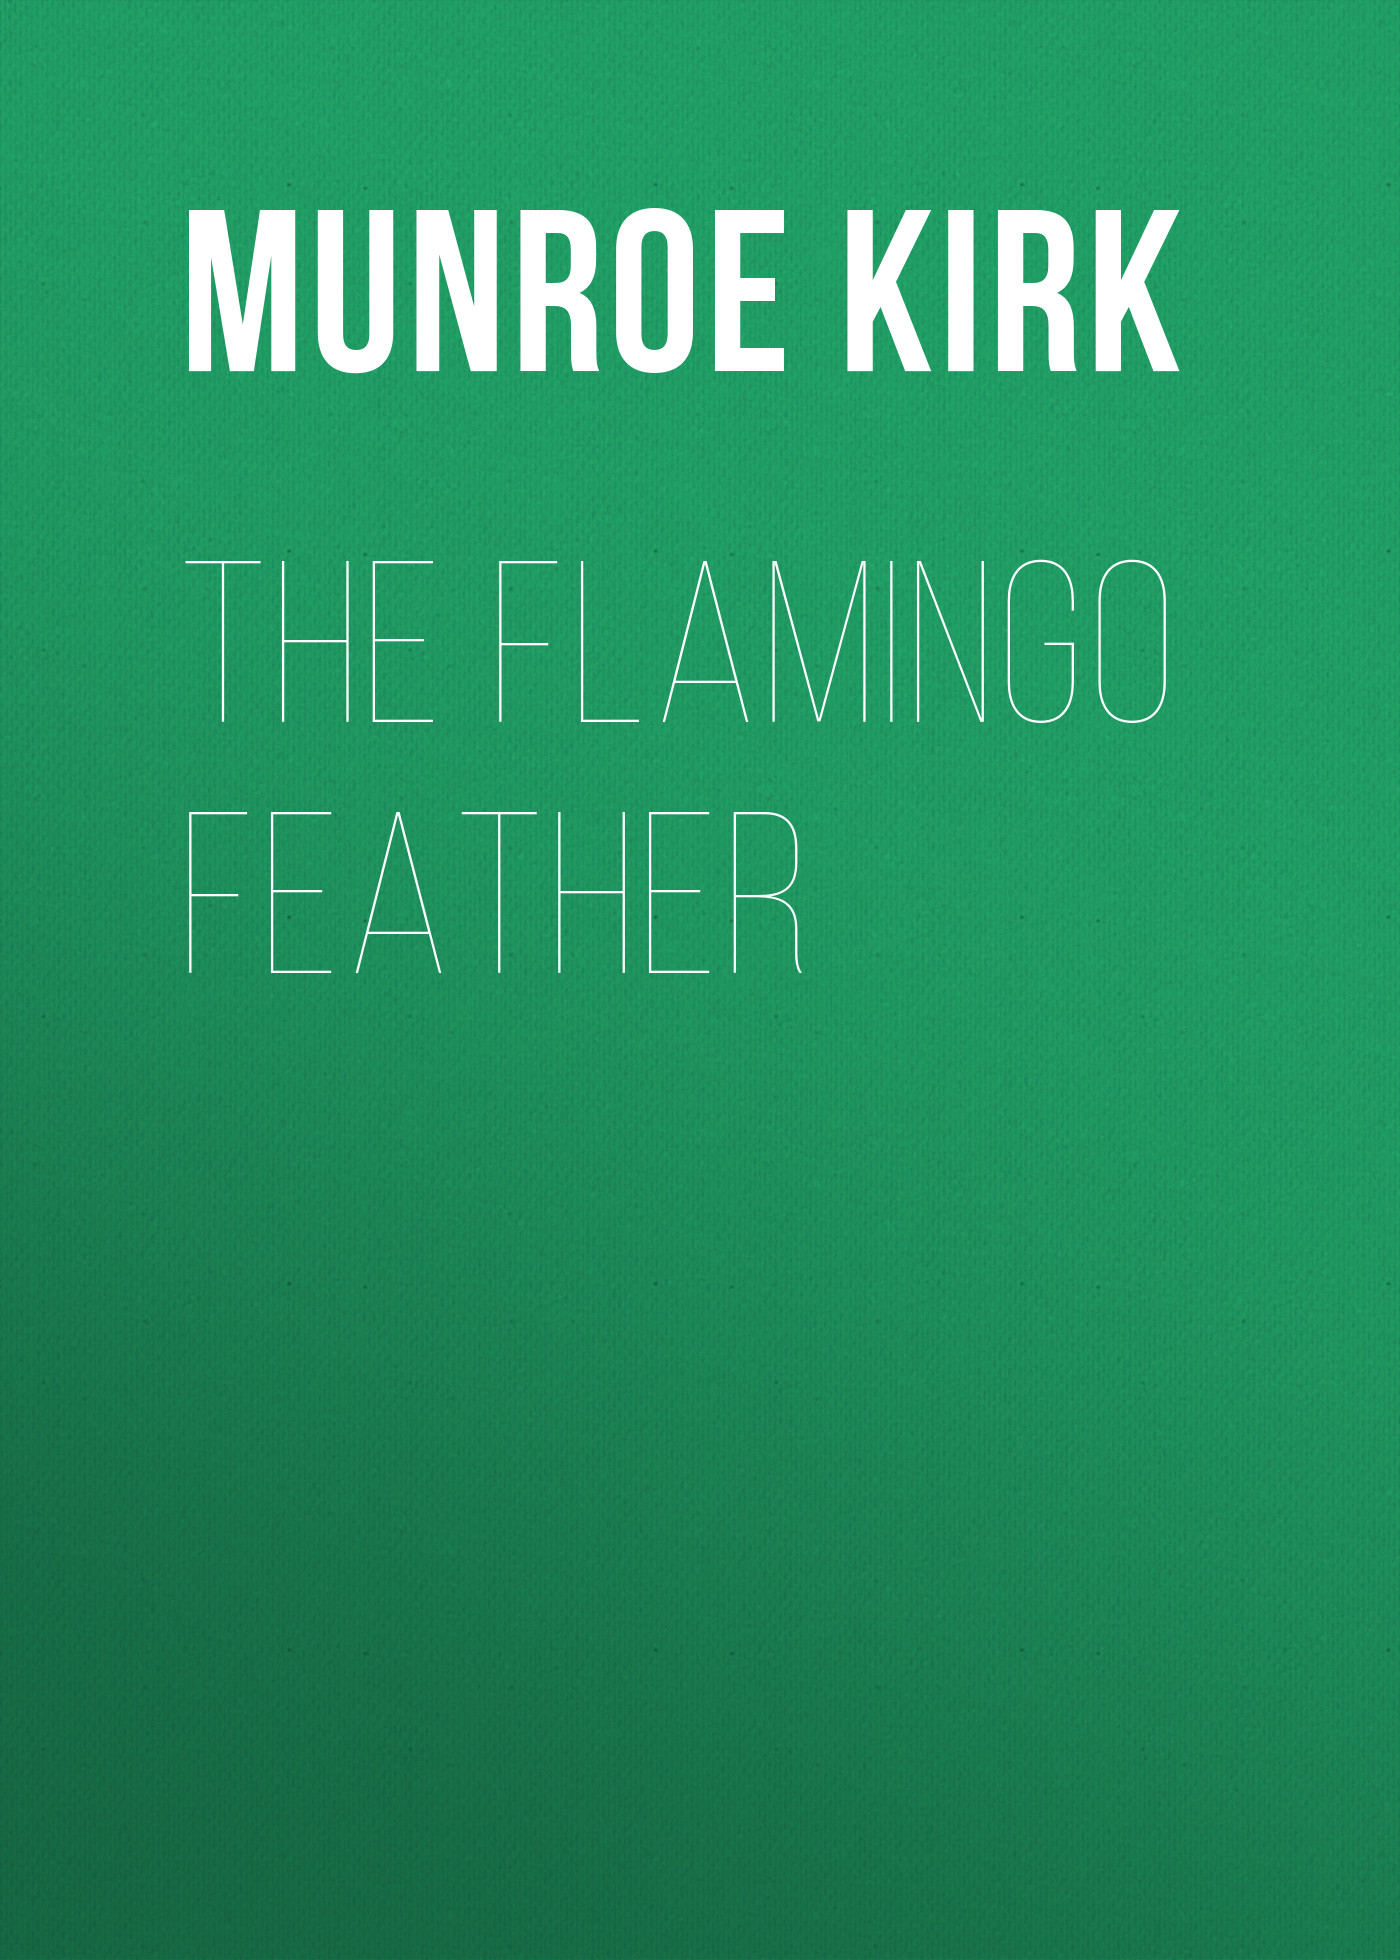 Книга The Flamingo Feather из серии , созданная Kirk Munroe, может относится к жанру Зарубежные детские книги, История, Зарубежная старинная литература, Зарубежная классика. Стоимость книги The Flamingo Feather  с идентификатором 36095285 составляет 0 руб.